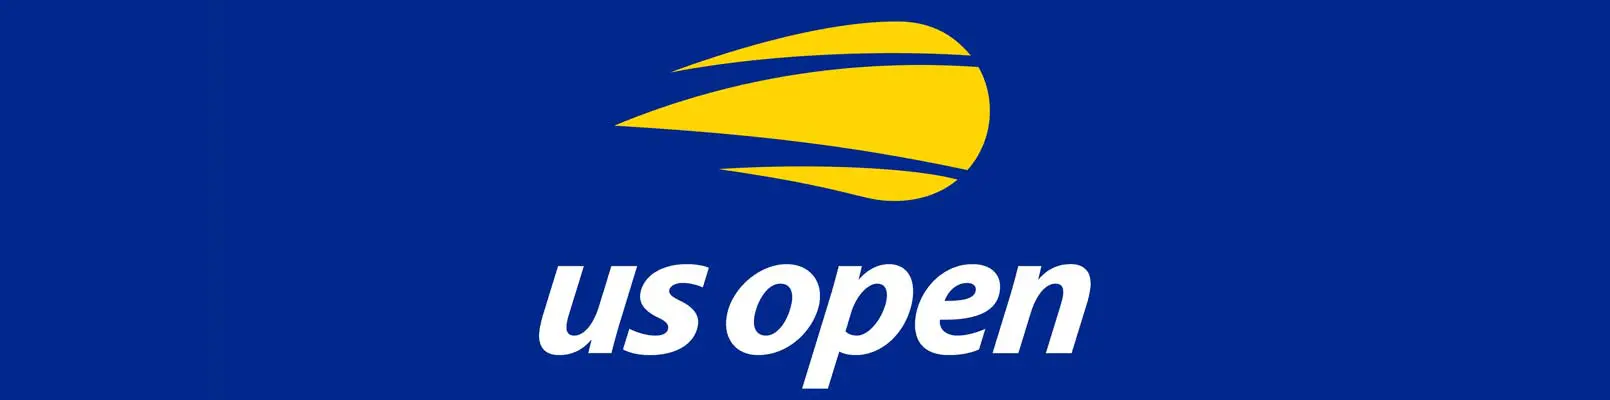 analiza jucatori us open tenis 2020